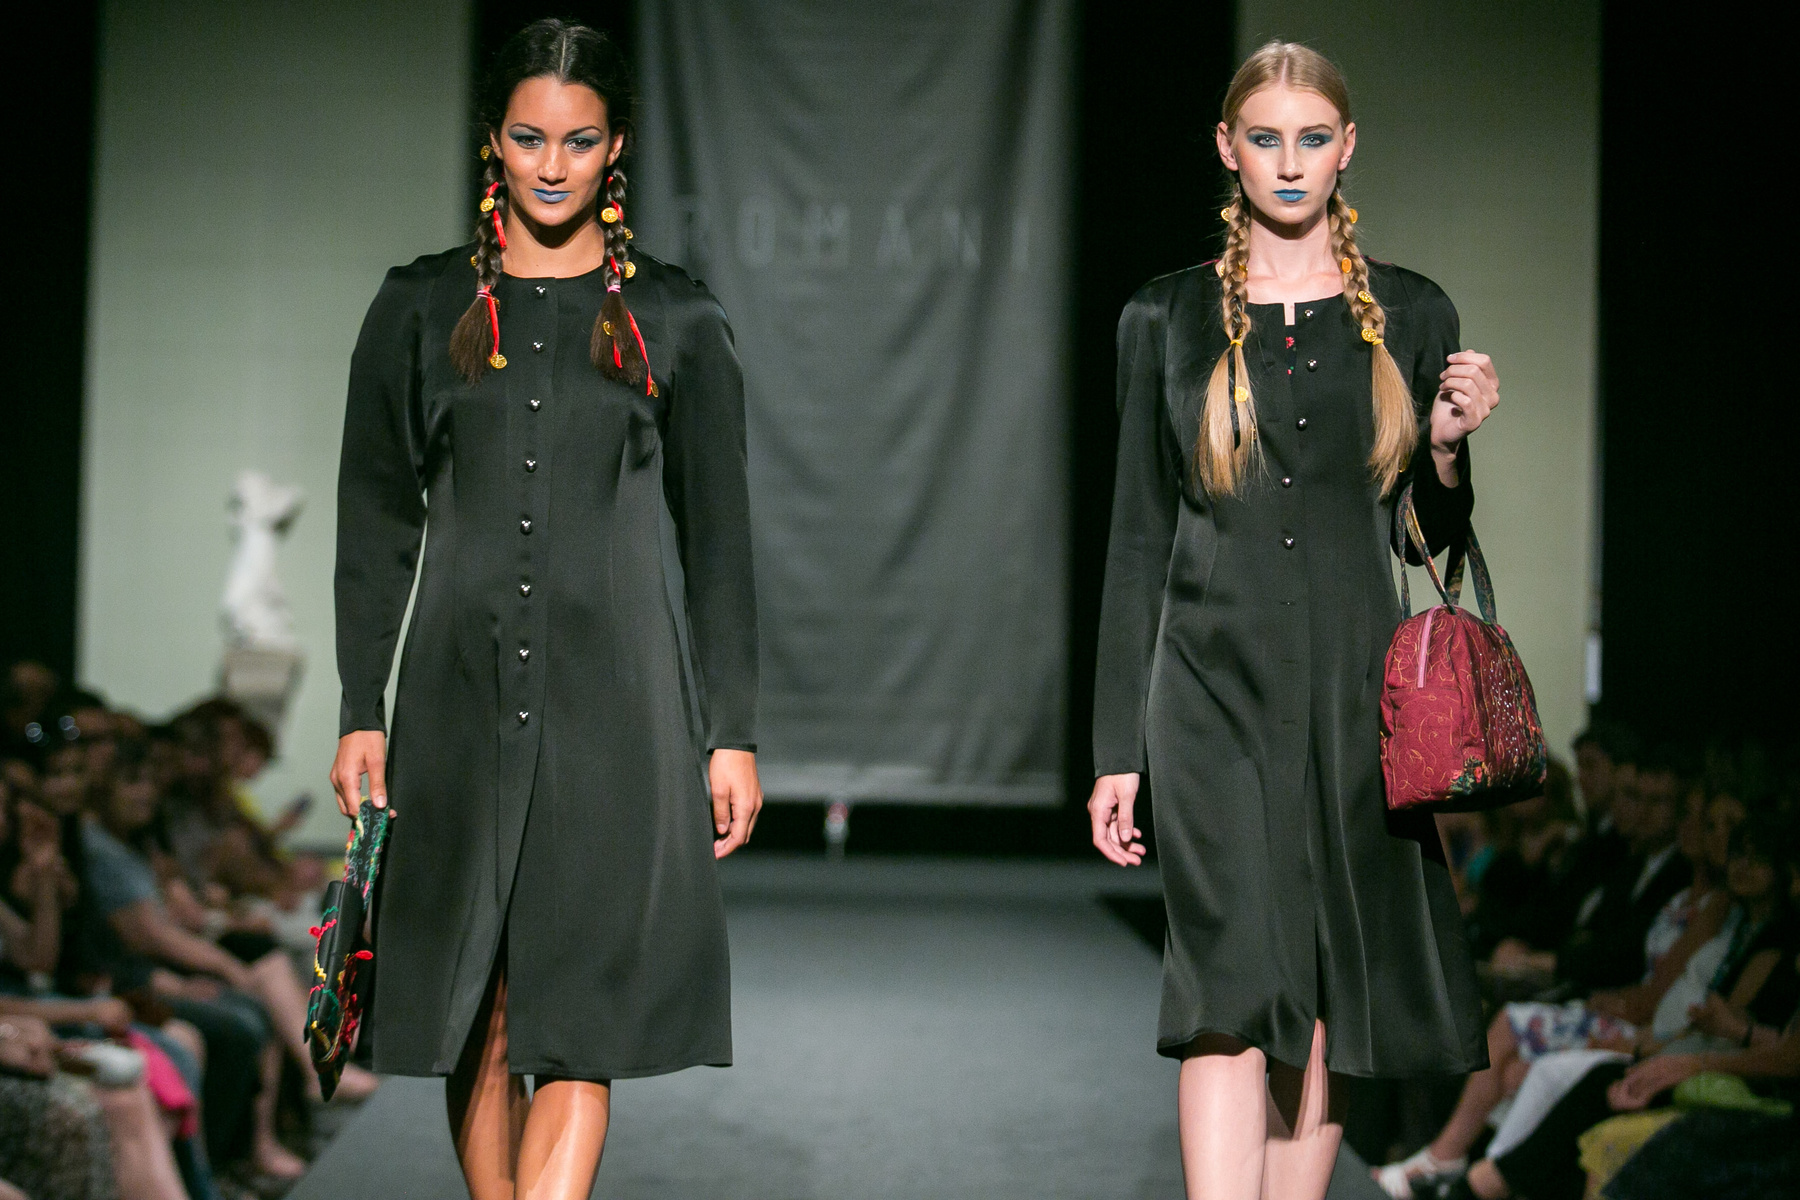 Középen a ruhákat tervező Varga Erika, mellette kétoldalt Diós Gabriella és Varga Helena, hátérben a modellek.